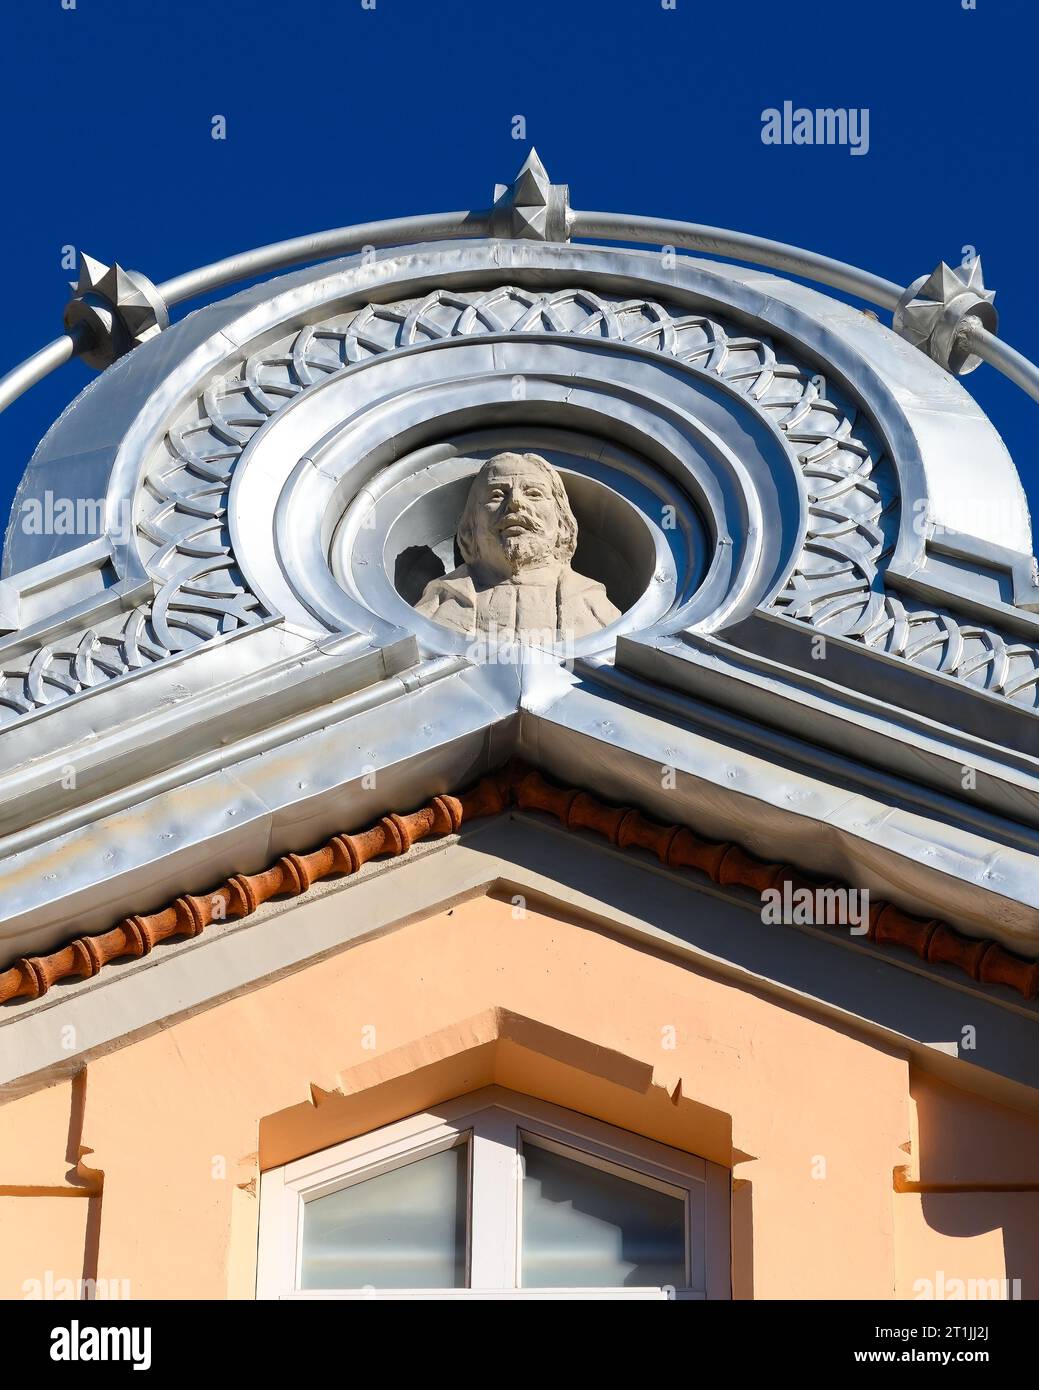 Silberfarbene Struktur um eine Statue oder Skulptur. Architektonisches Element in der Fassade oder Außenwand des Romea Theaters. Stockfoto